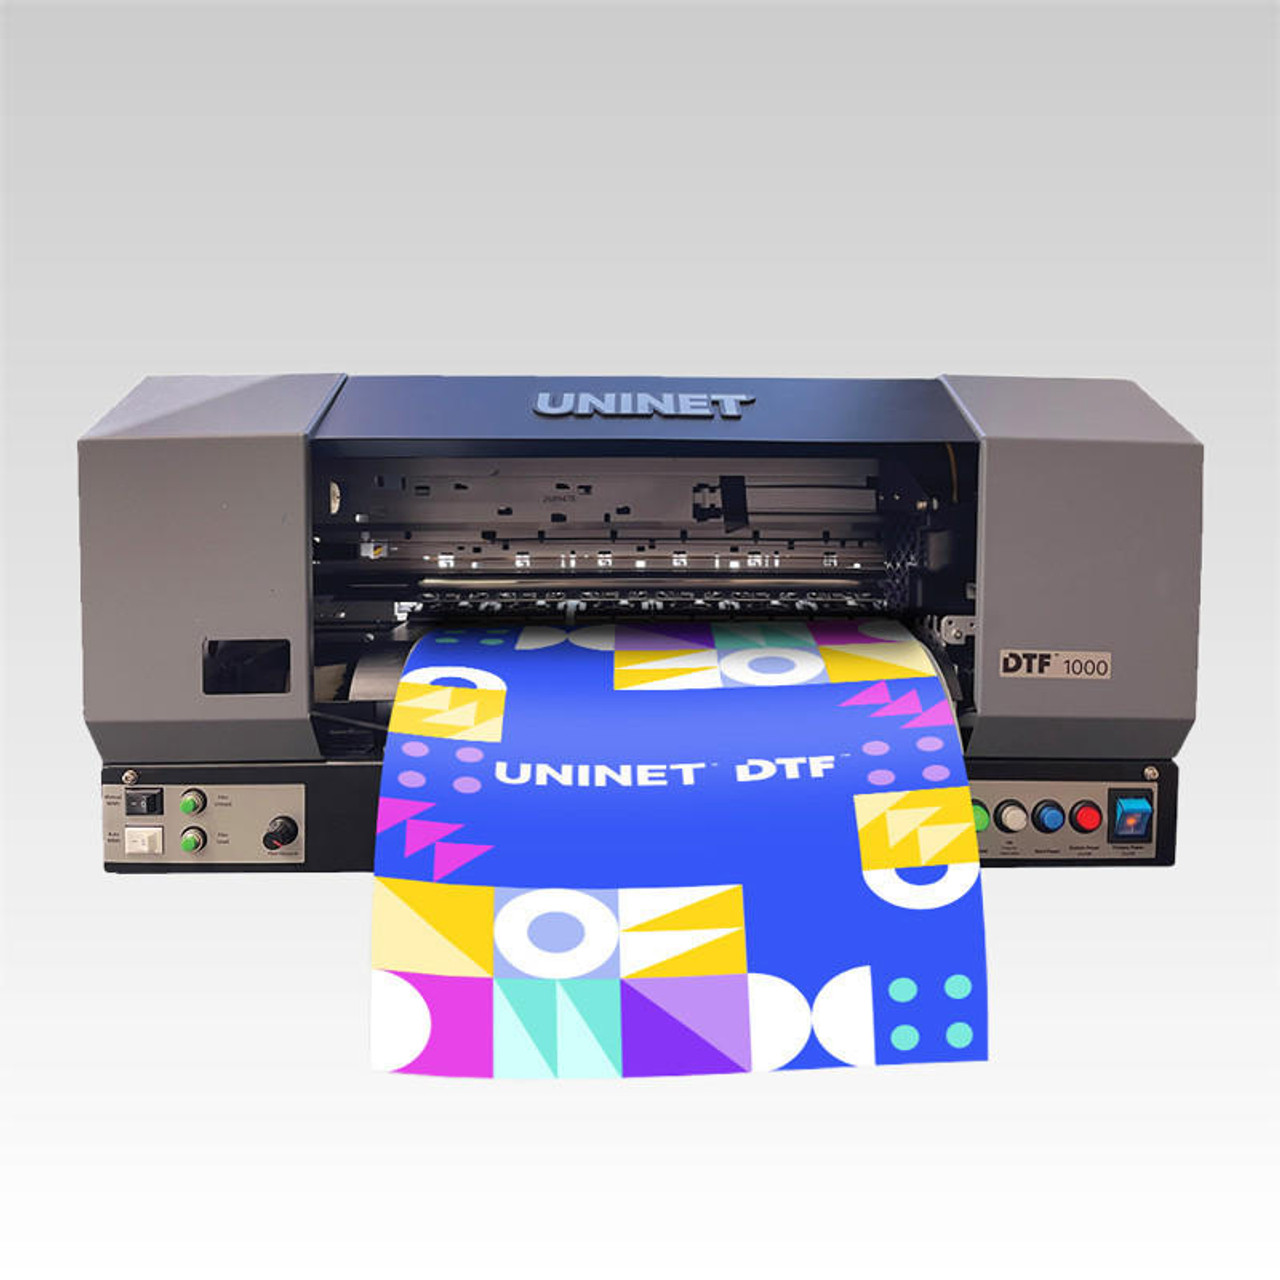 UniNet DTF 1000 DTF Printer Bundles